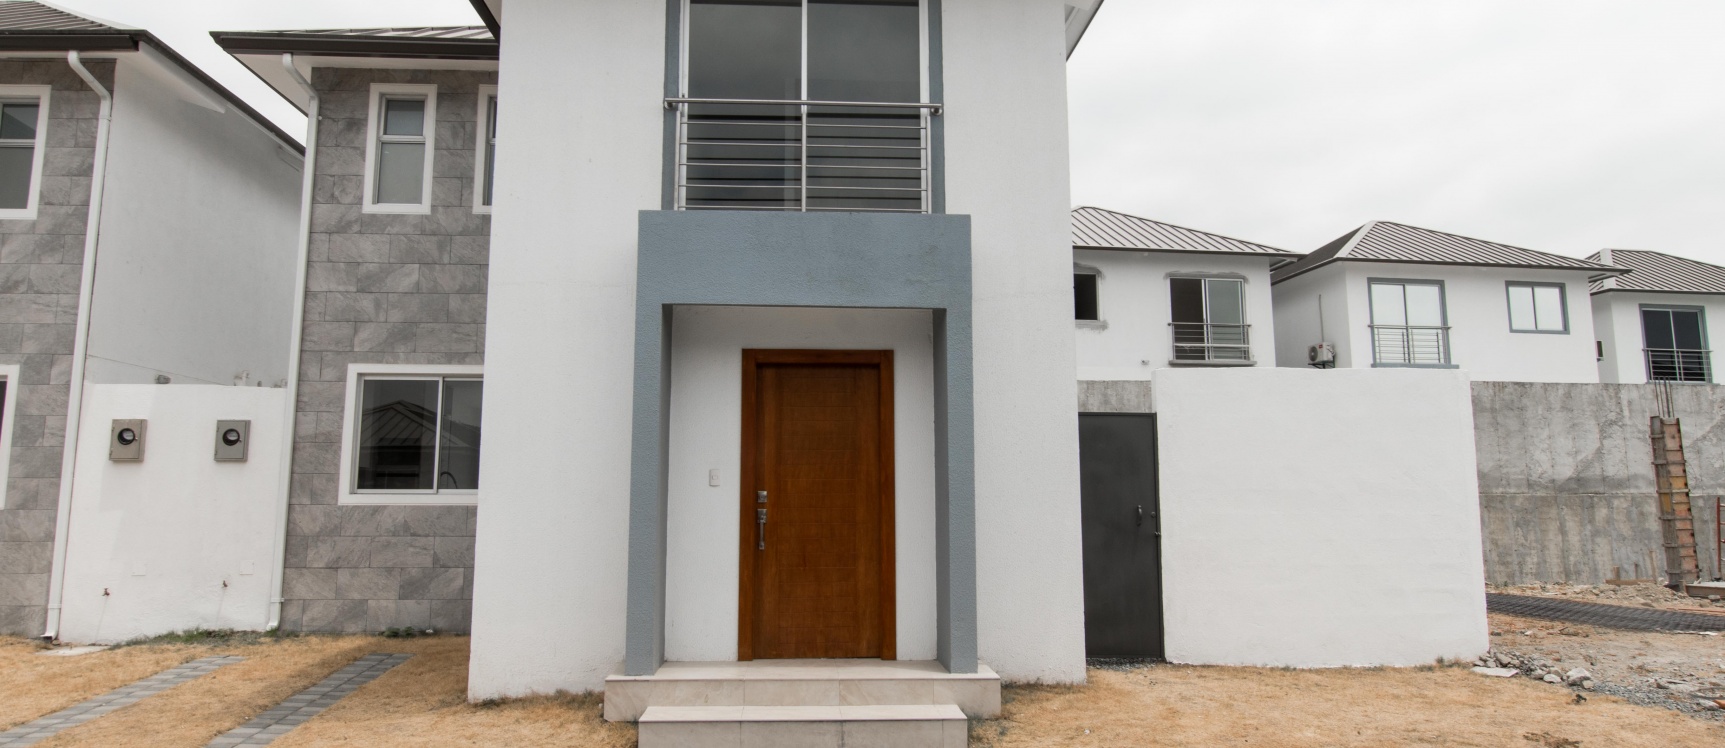 GeoBienes - Casa en venta ubicada en la Urbanización Vistana 1000, Etapa Omega - Plusvalia Guayaquil Casas de venta y alquiler Inmobiliaria Ecuador